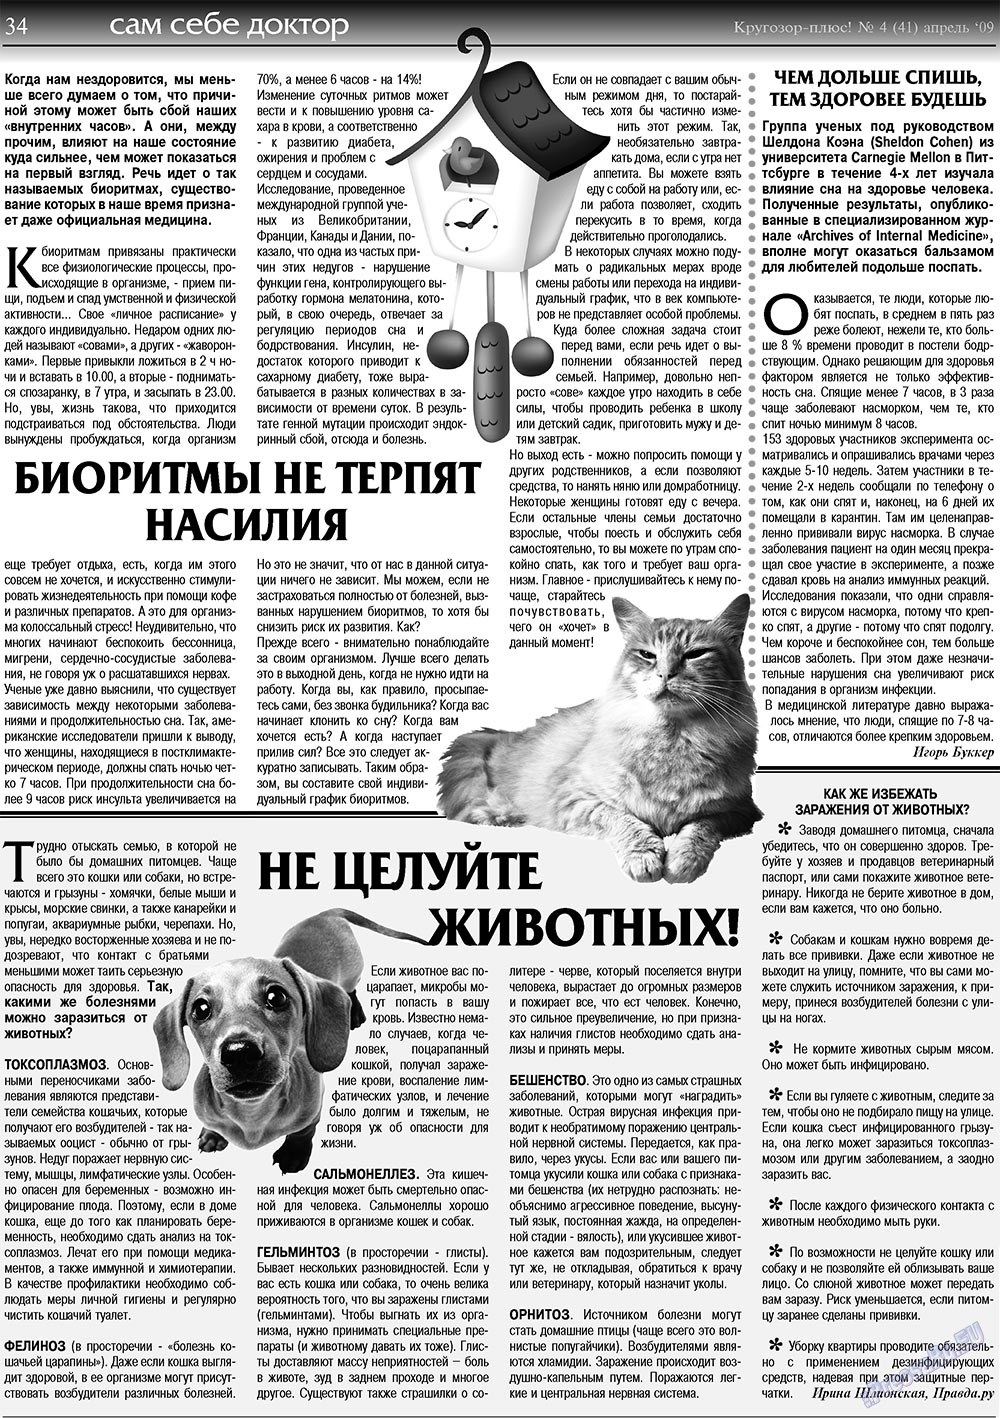 Кругозор плюс!, газета. 2009 №4 стр.34